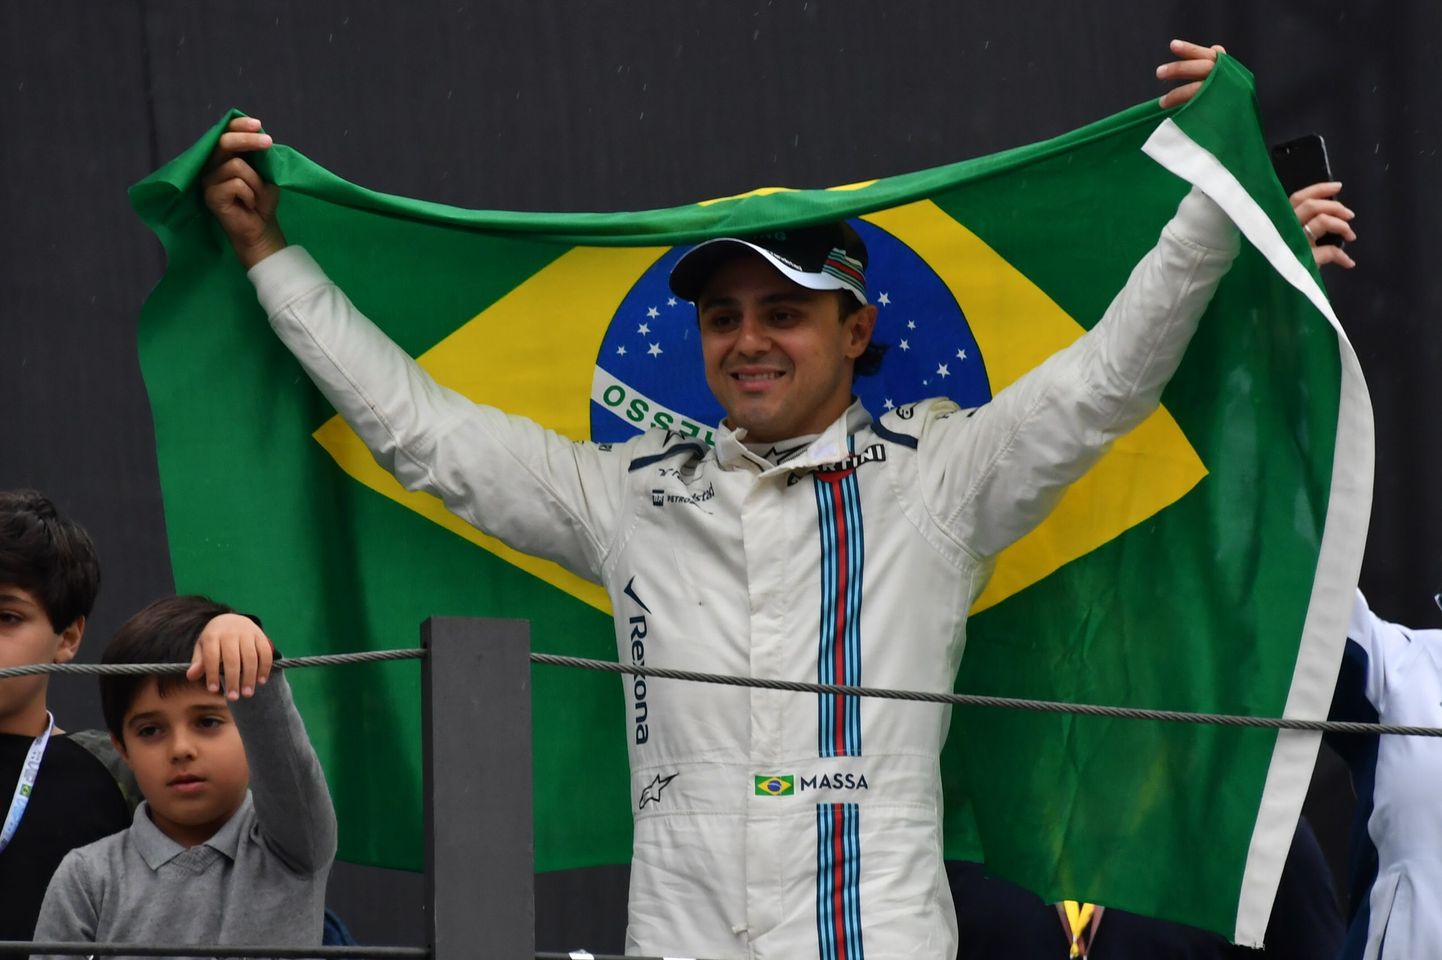 Alles mõne aja eest teatas Felipe Massa vormelikarjääri lõpetamisest